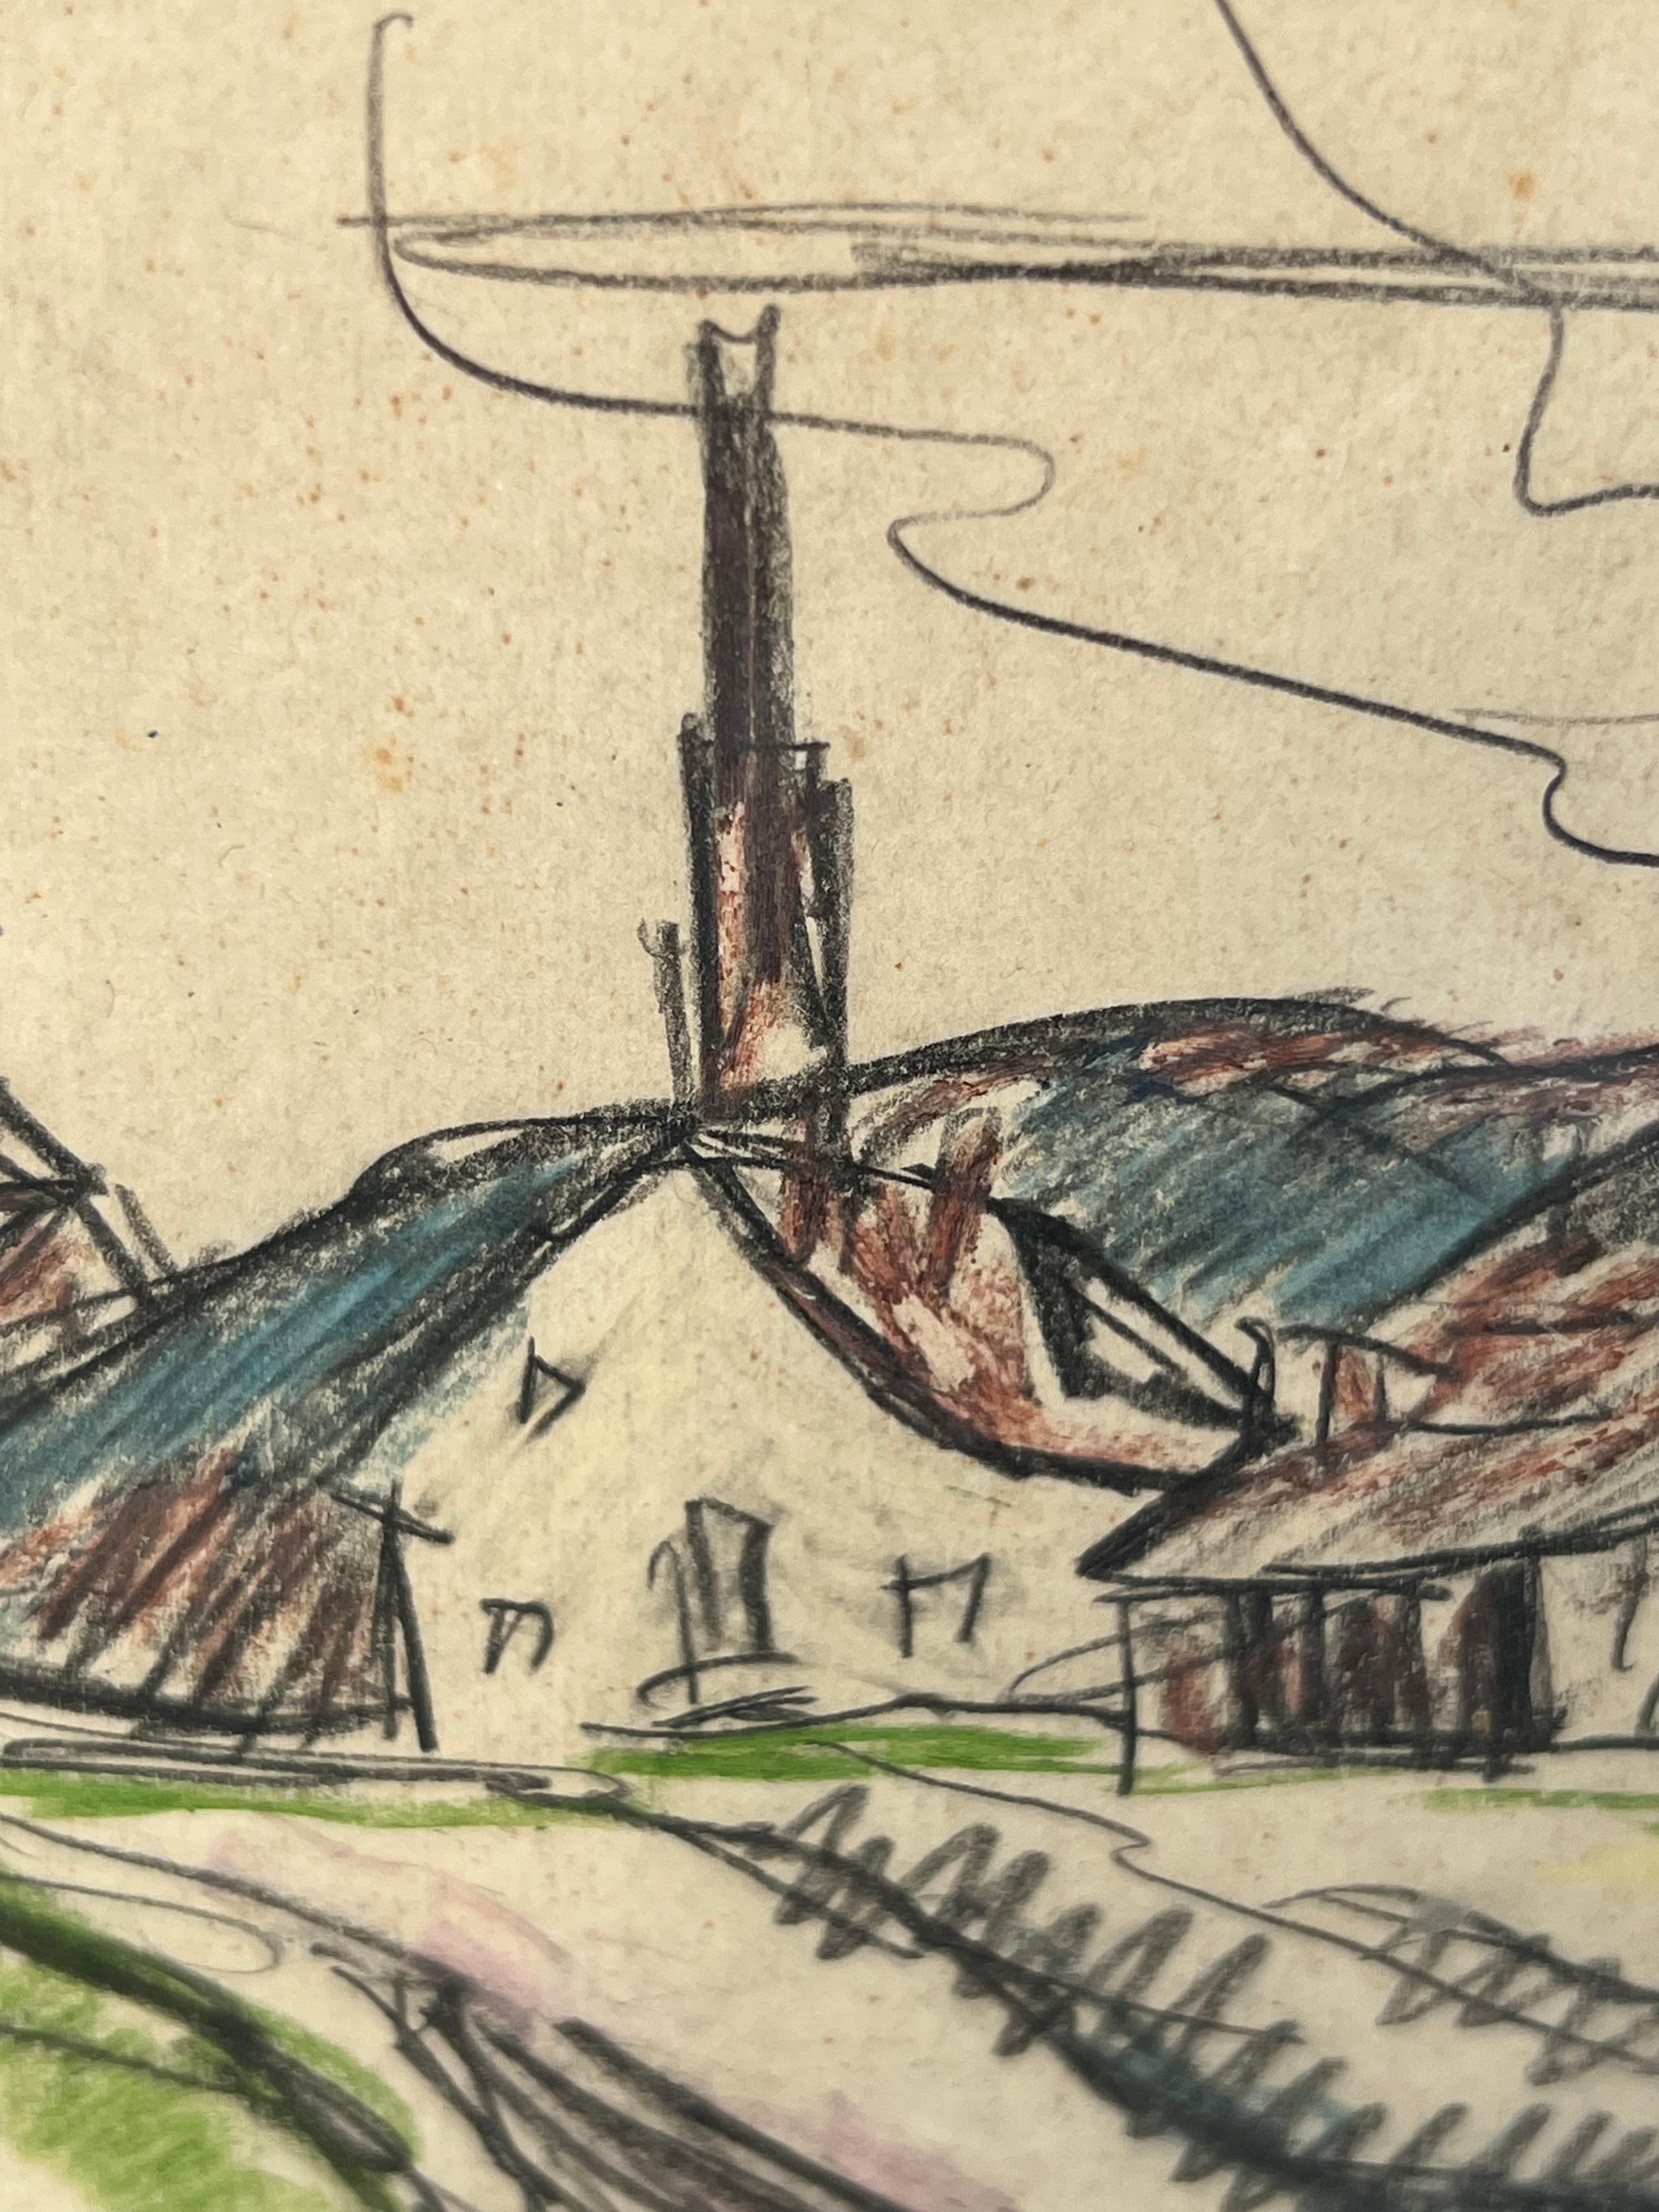 Frühmoderne Landschaftszeichnung des deutschen Künstlers Hermann Max Pechstein. Das Werk zeigt eine gestische Darstellung eines gewundenen Weges, der in ein kleines Dorf führt. Signiert mit einem Monogramm in der rechten unteren Ecke der